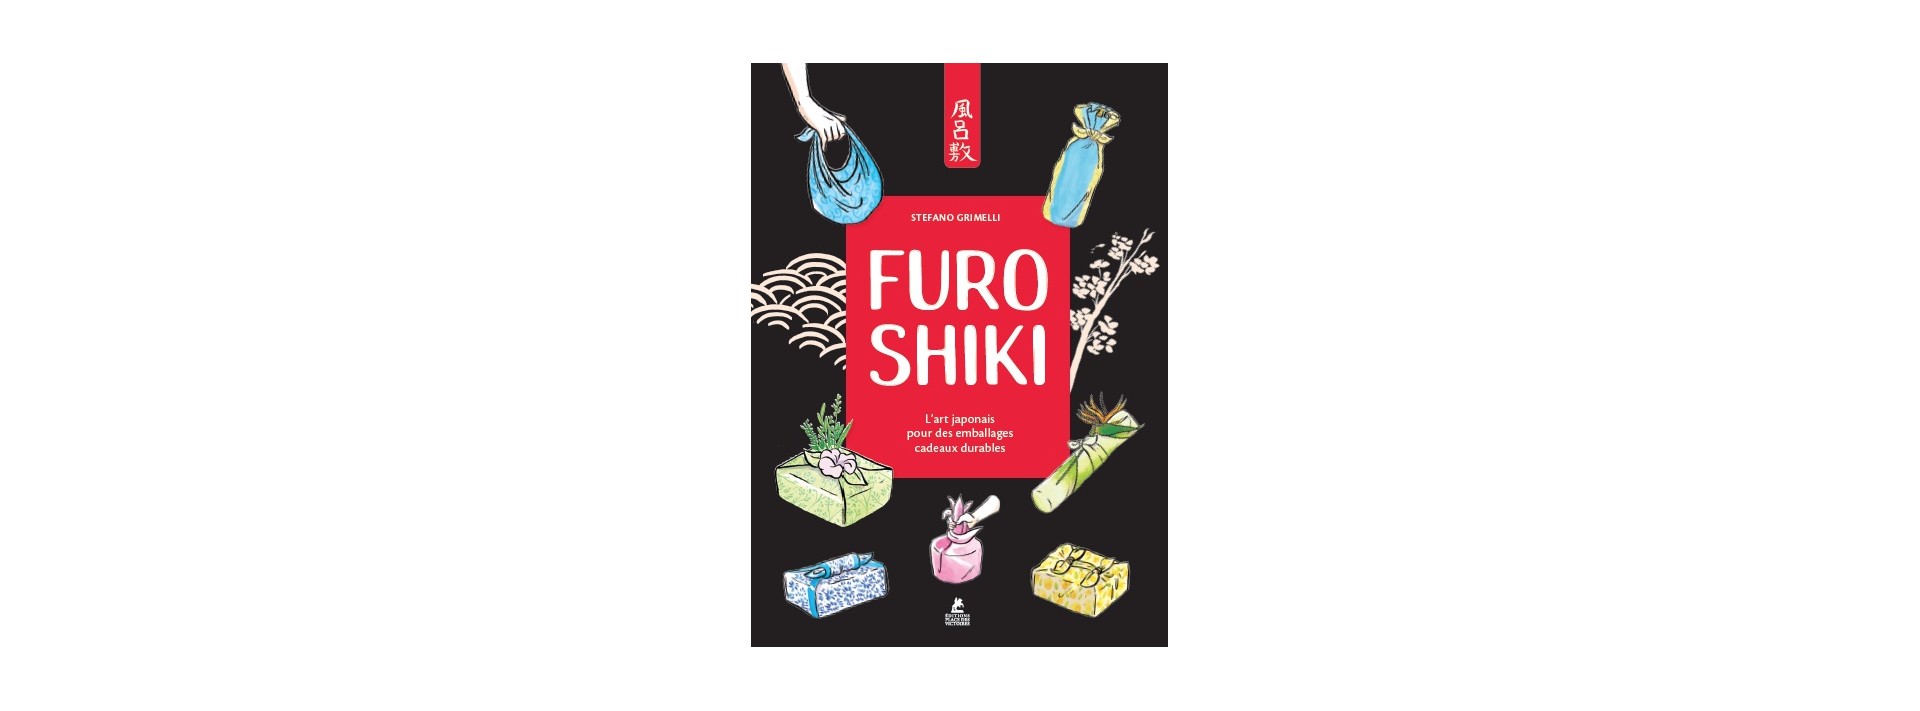 Furoshiki - L'emballage cadeau écolo à la japonaise